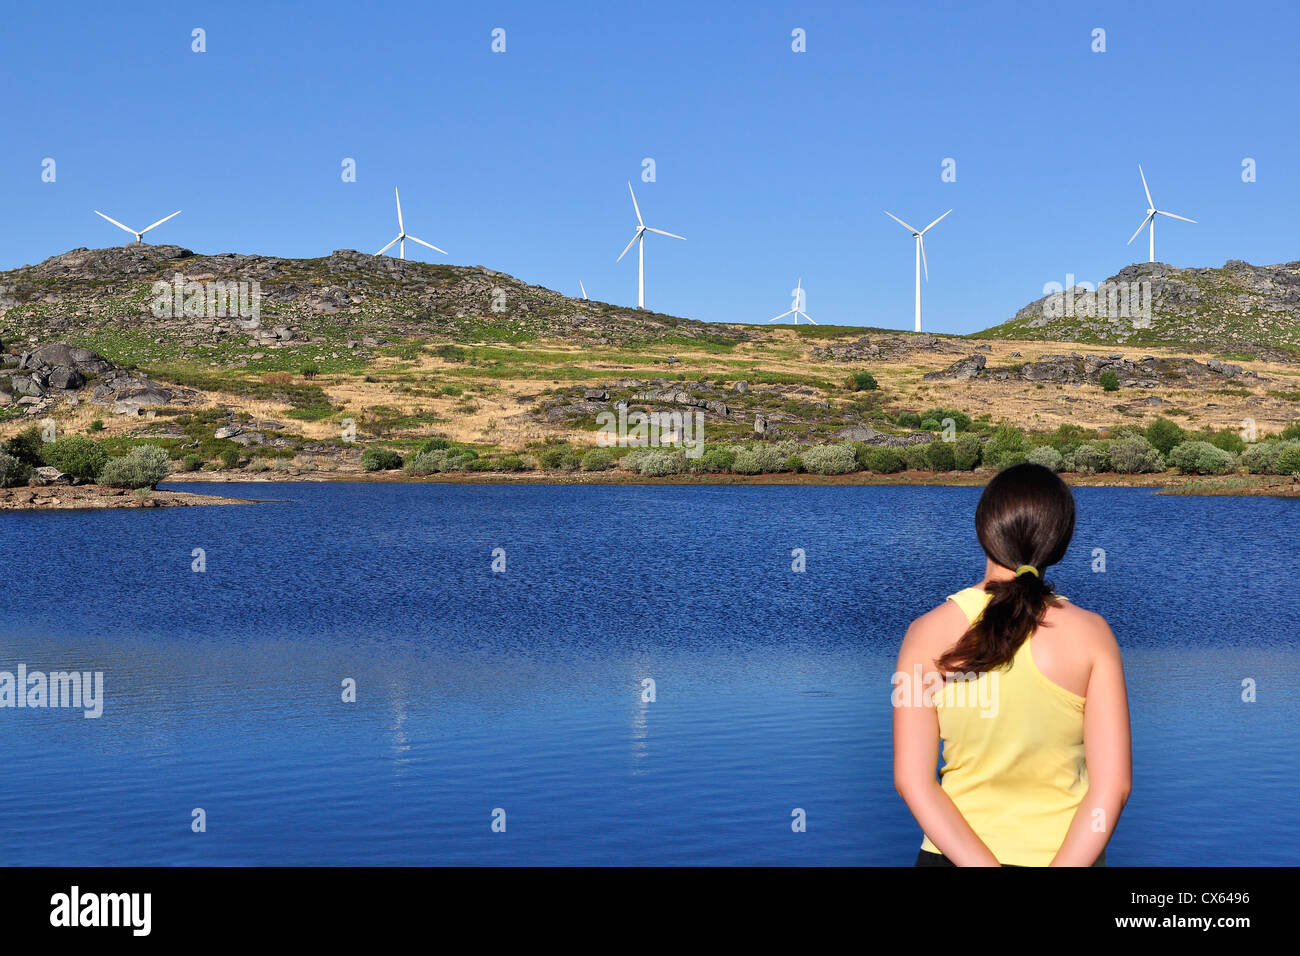 Frau eine Windmühle über einen See betrachten. Konzentriert sich auf die Windräder und die Frau ist leicht unscharf. Stockfoto